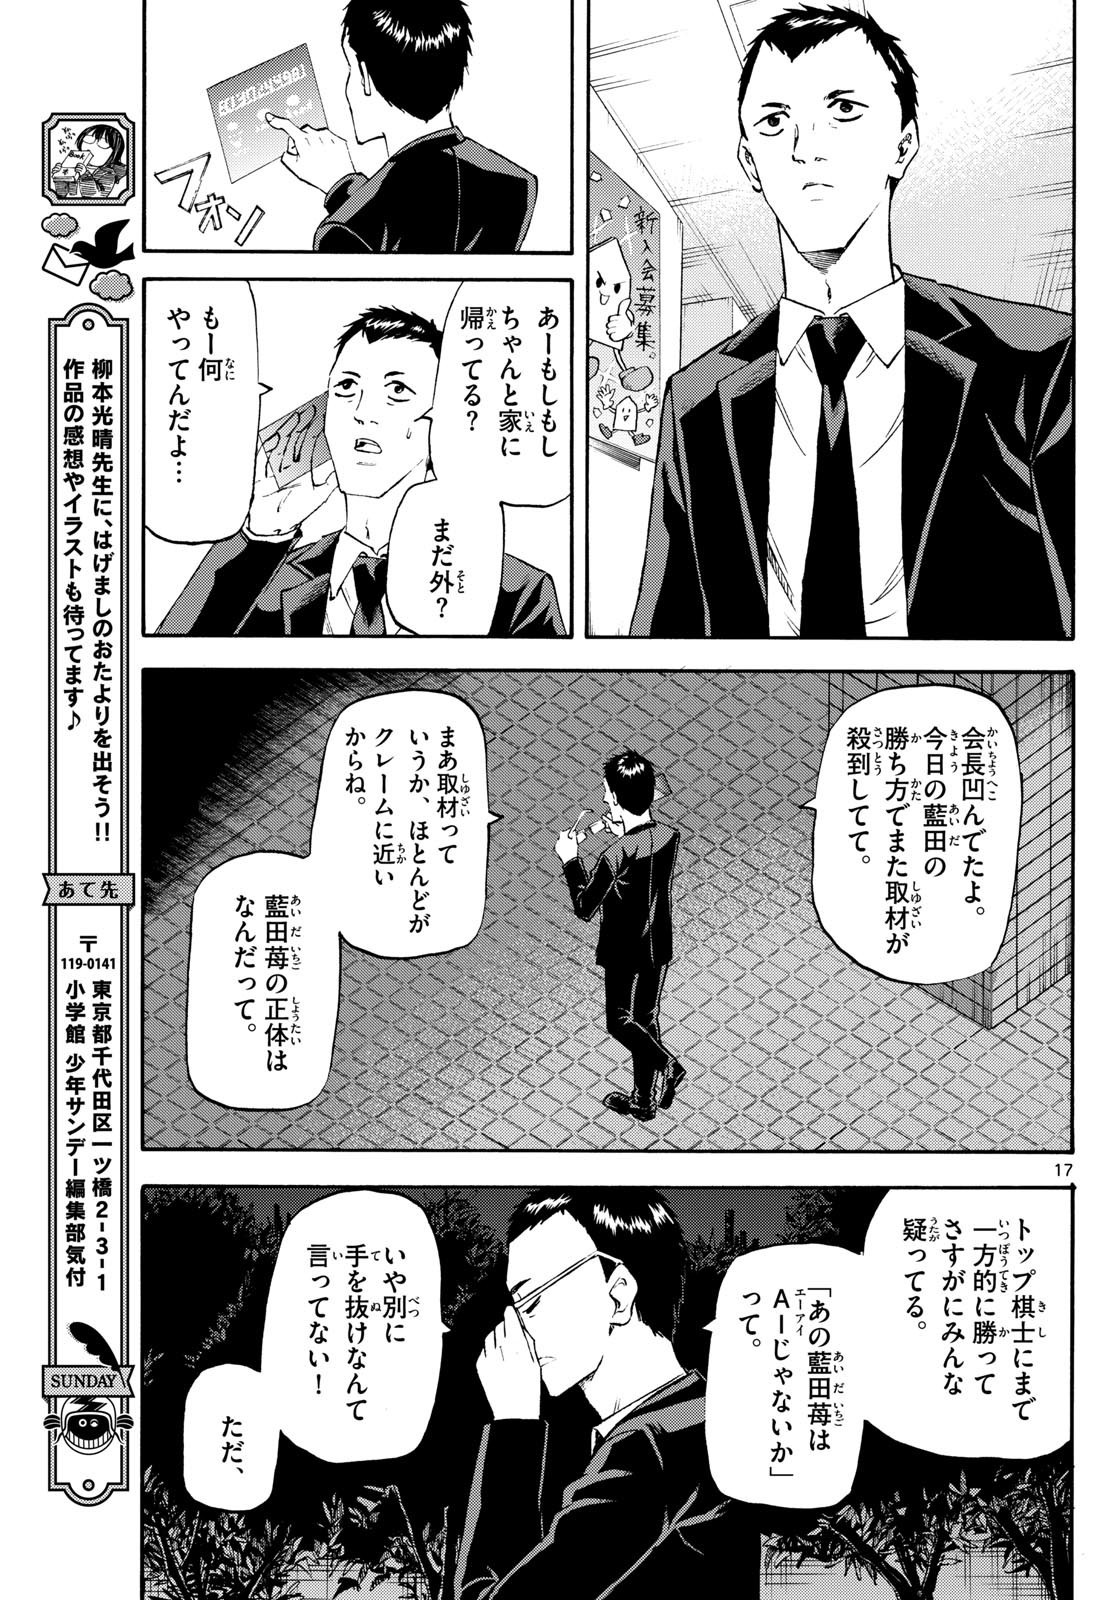 Ryu-to-Ichigo - Chapter 201 - Page 17